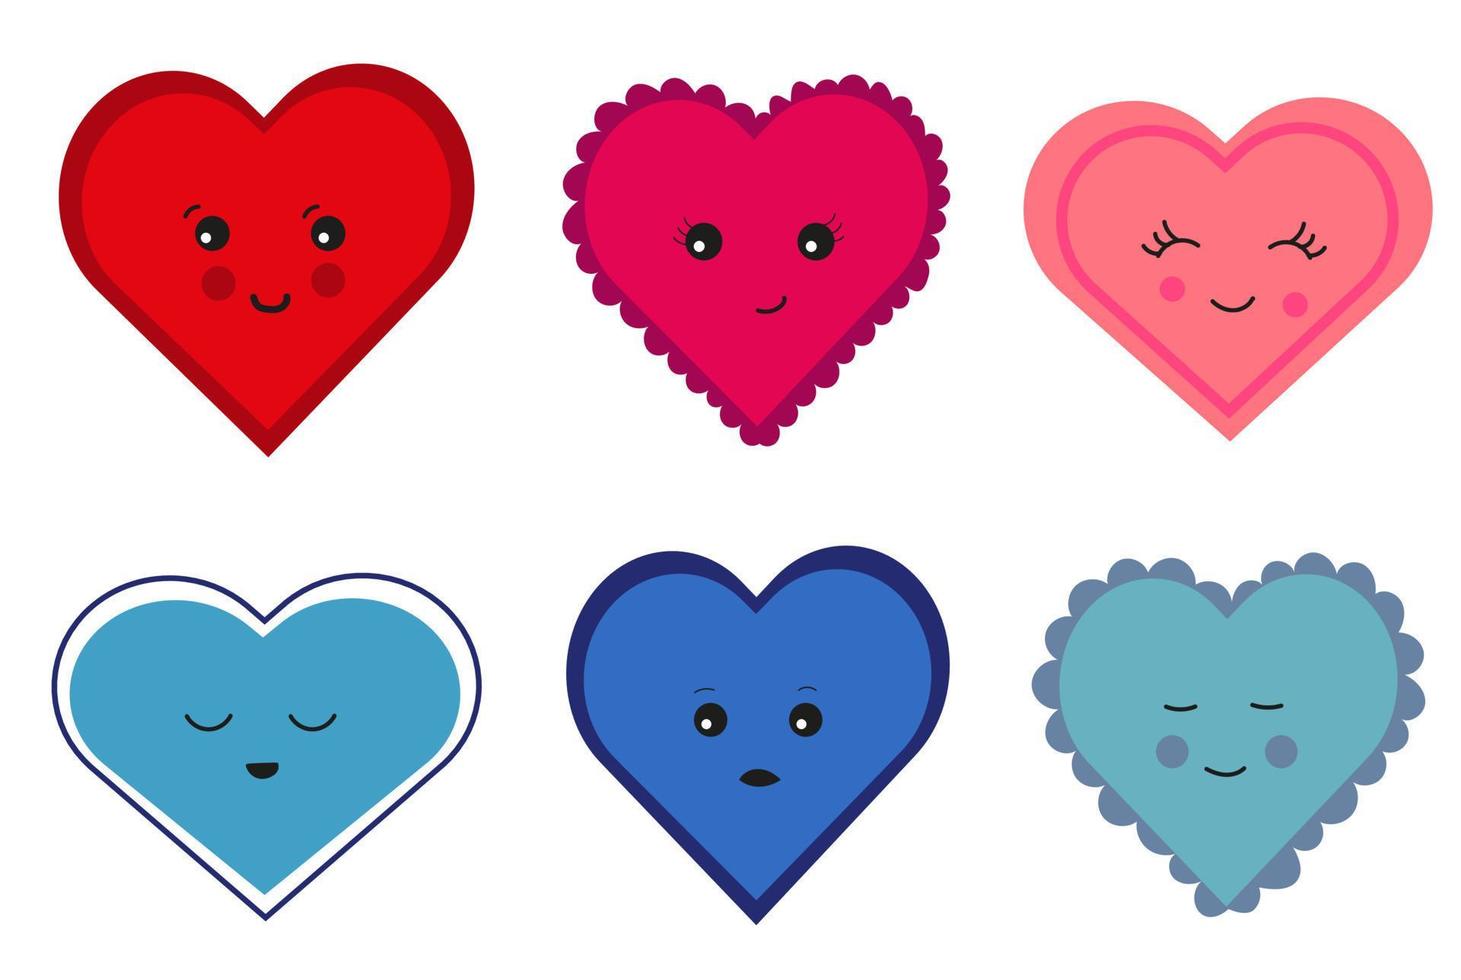 uppsättning av röd, rosa och blå hjärtan. hjärtan med annorlunda känslor och design. leende hjärta. ledsen hjärta. kärlek ikon klistermärke uppsättning. hjärtans dag illustration vektor. vektor